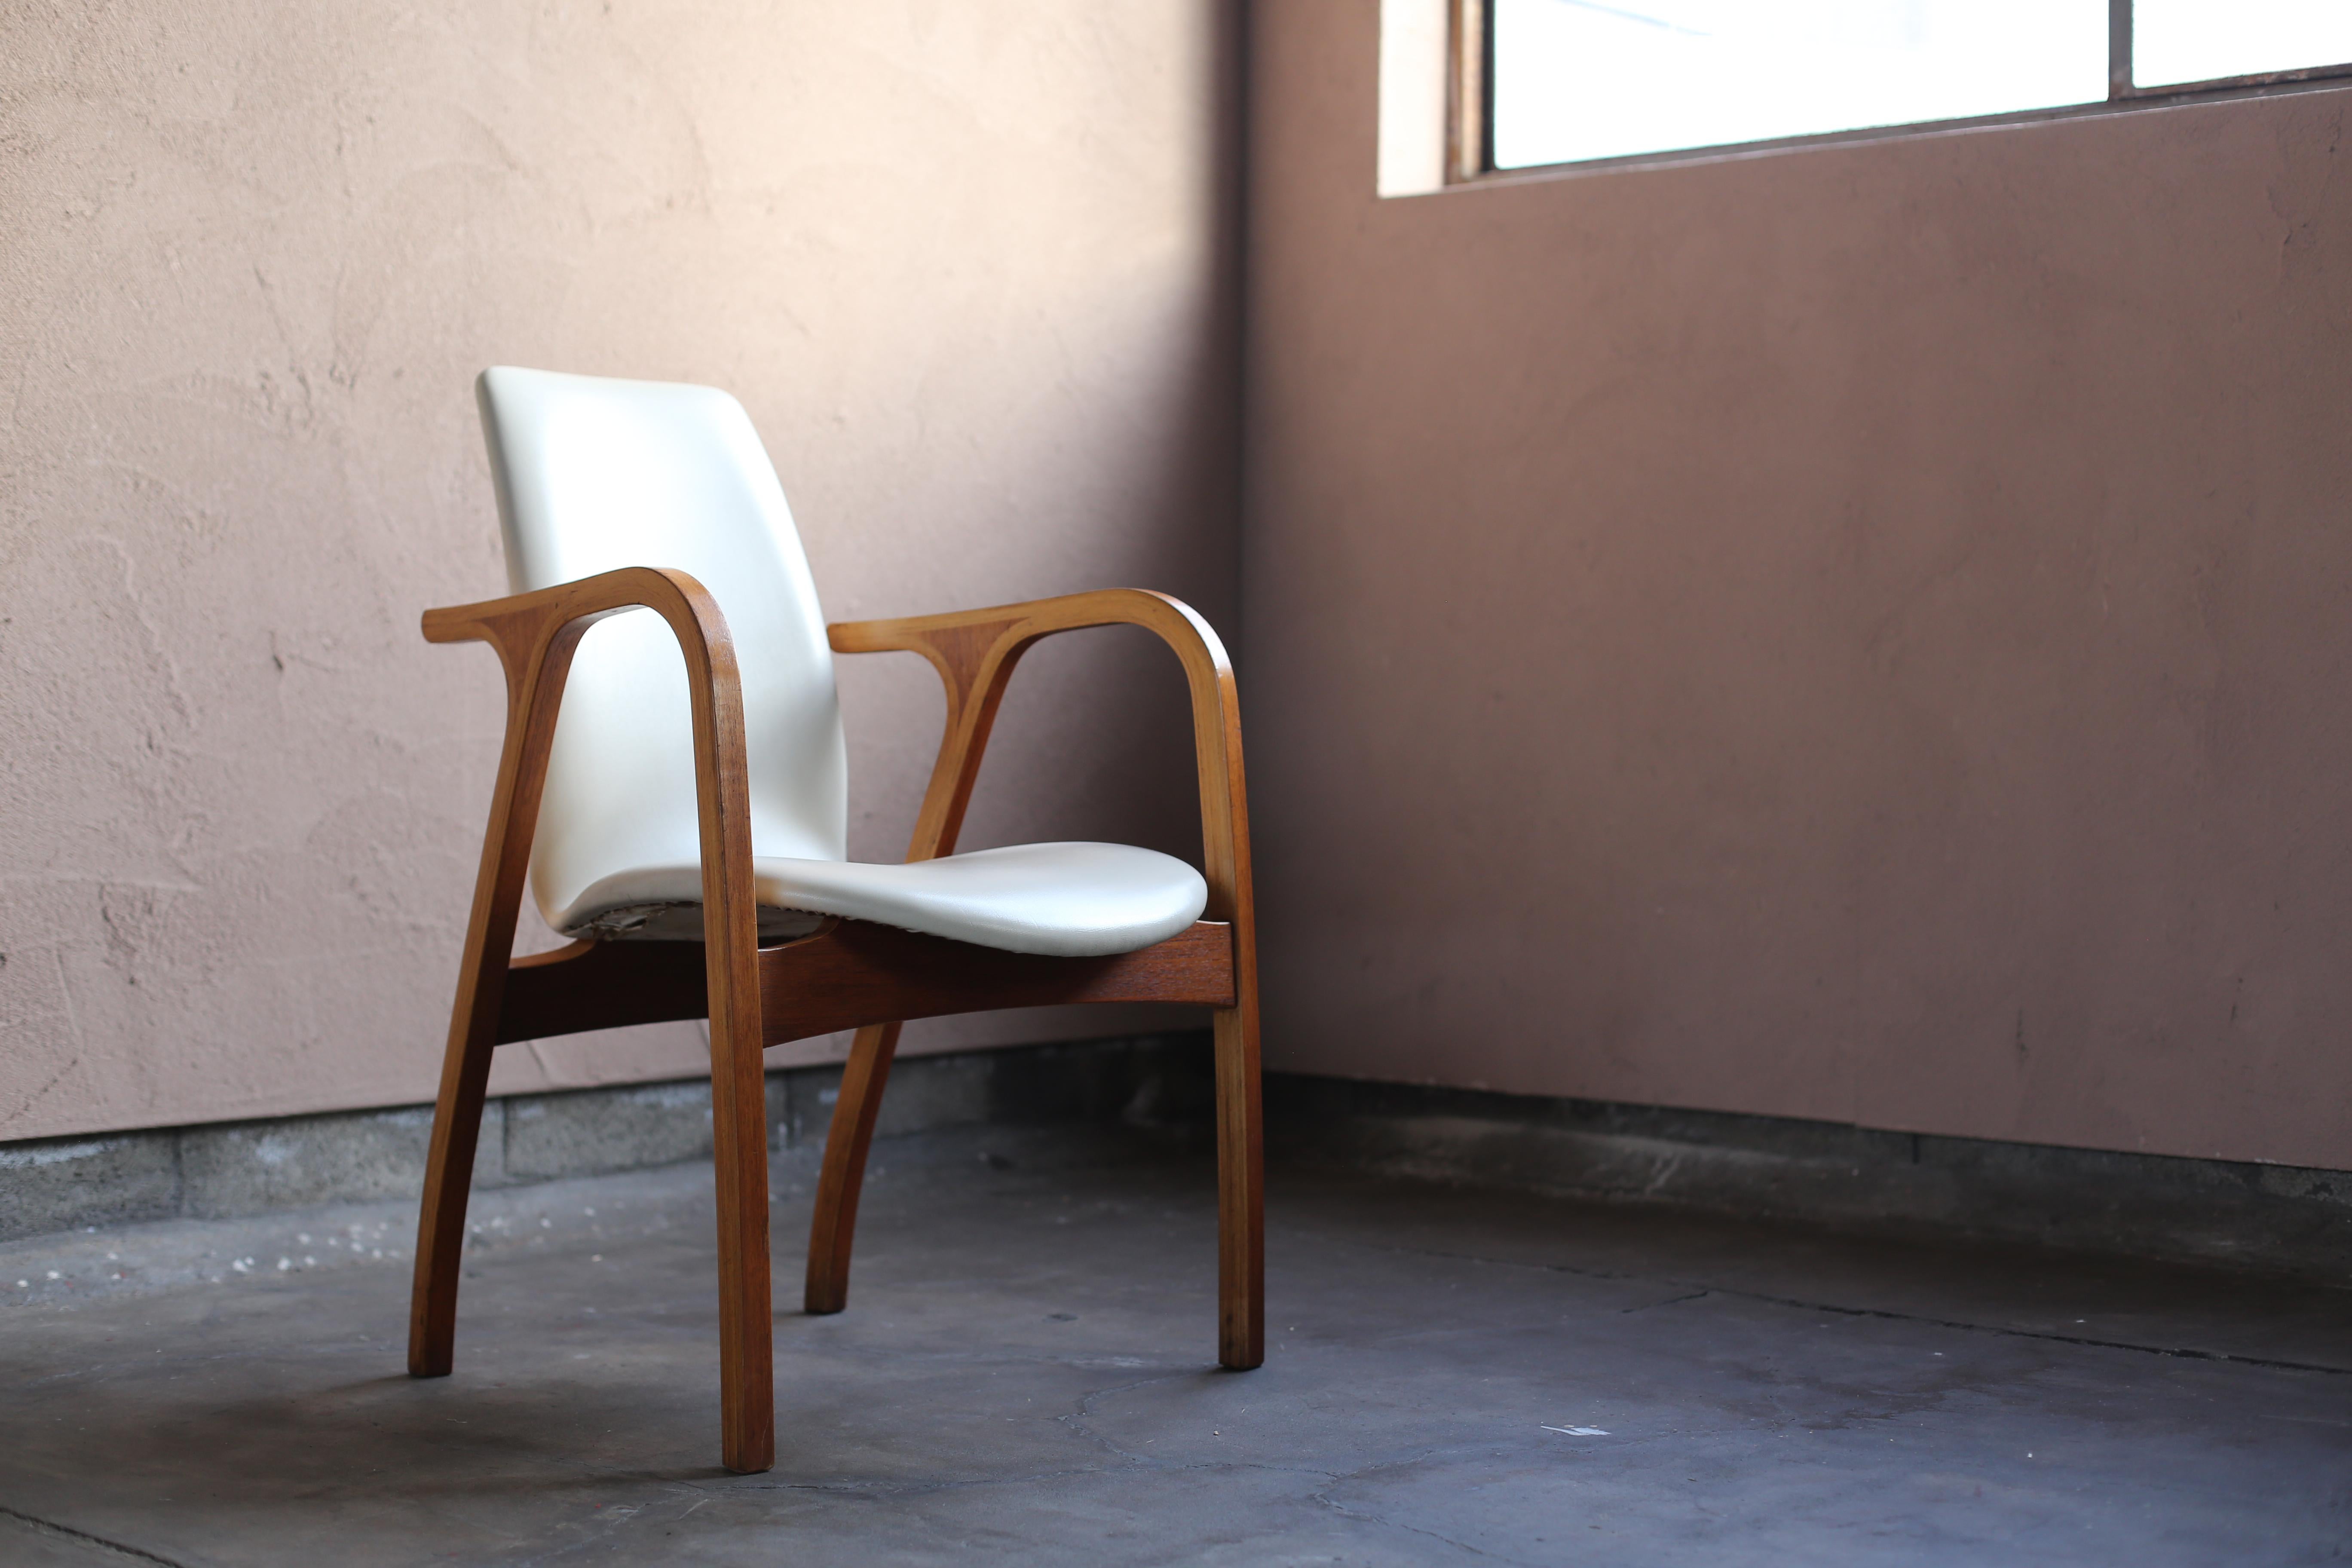 Antler Chair designed by Junzo Sakakura Architectural Office for Tendo Mokko For Sale 5